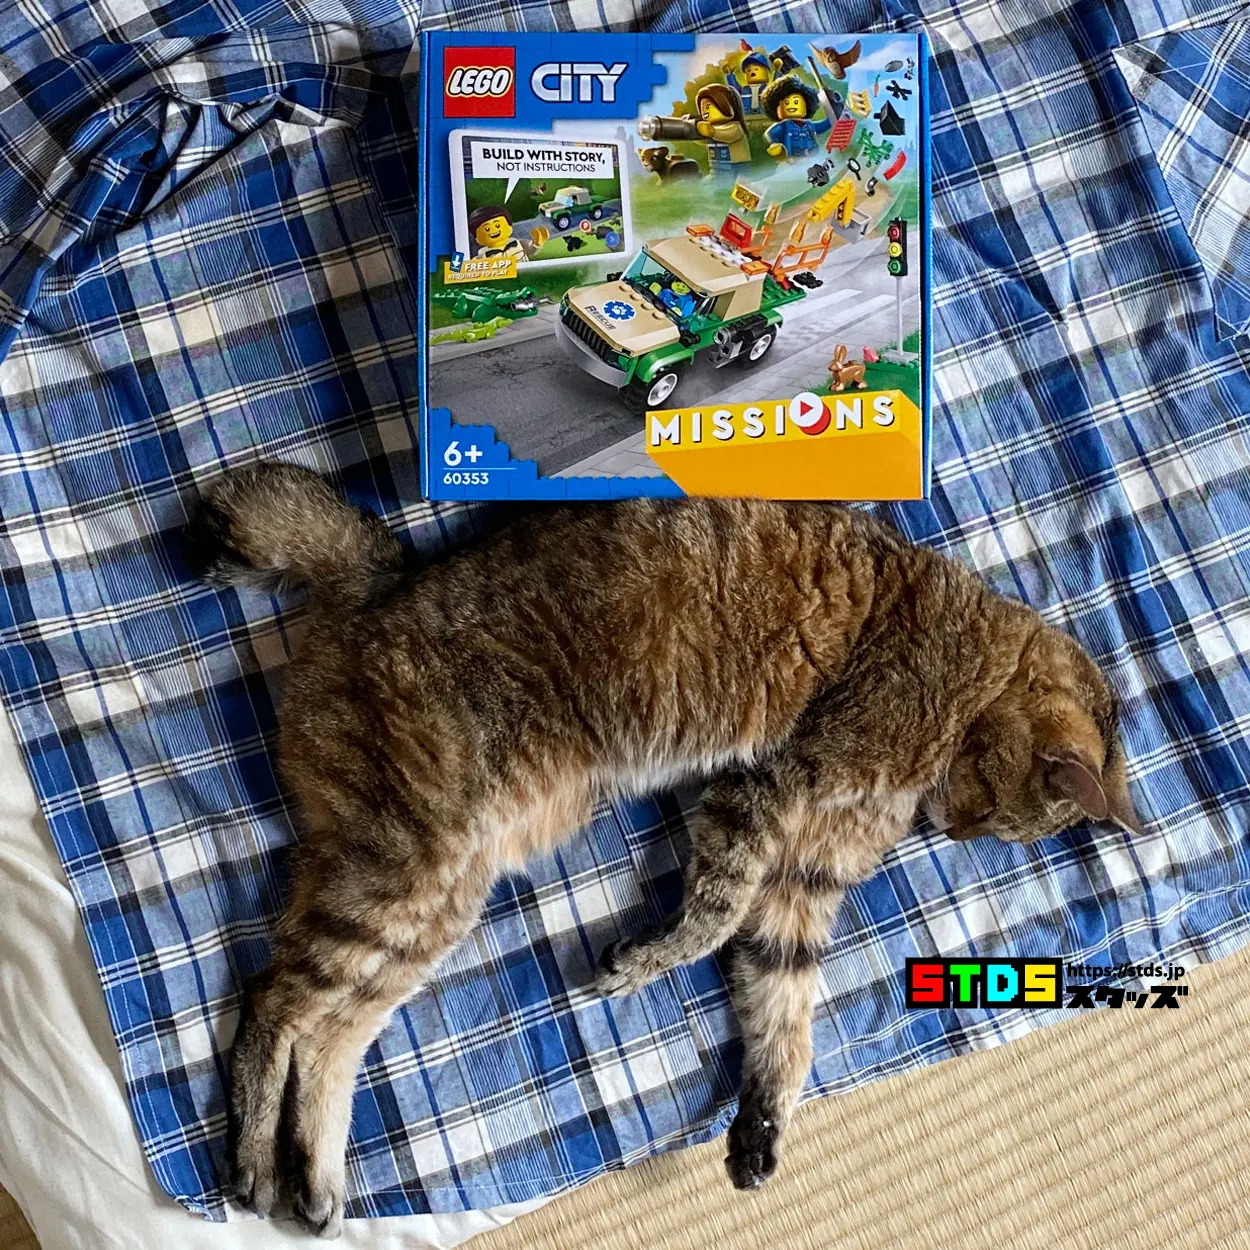 レゴ(R)レビュー『60353 野生動物レスキュー ミッション』ミッションをクリアしながら創作意欲を膨らませるレゴ(R)シティ新シリーズ│スタッズ｜レゴ (R)LEGO(R)総合ファンニュースメディア